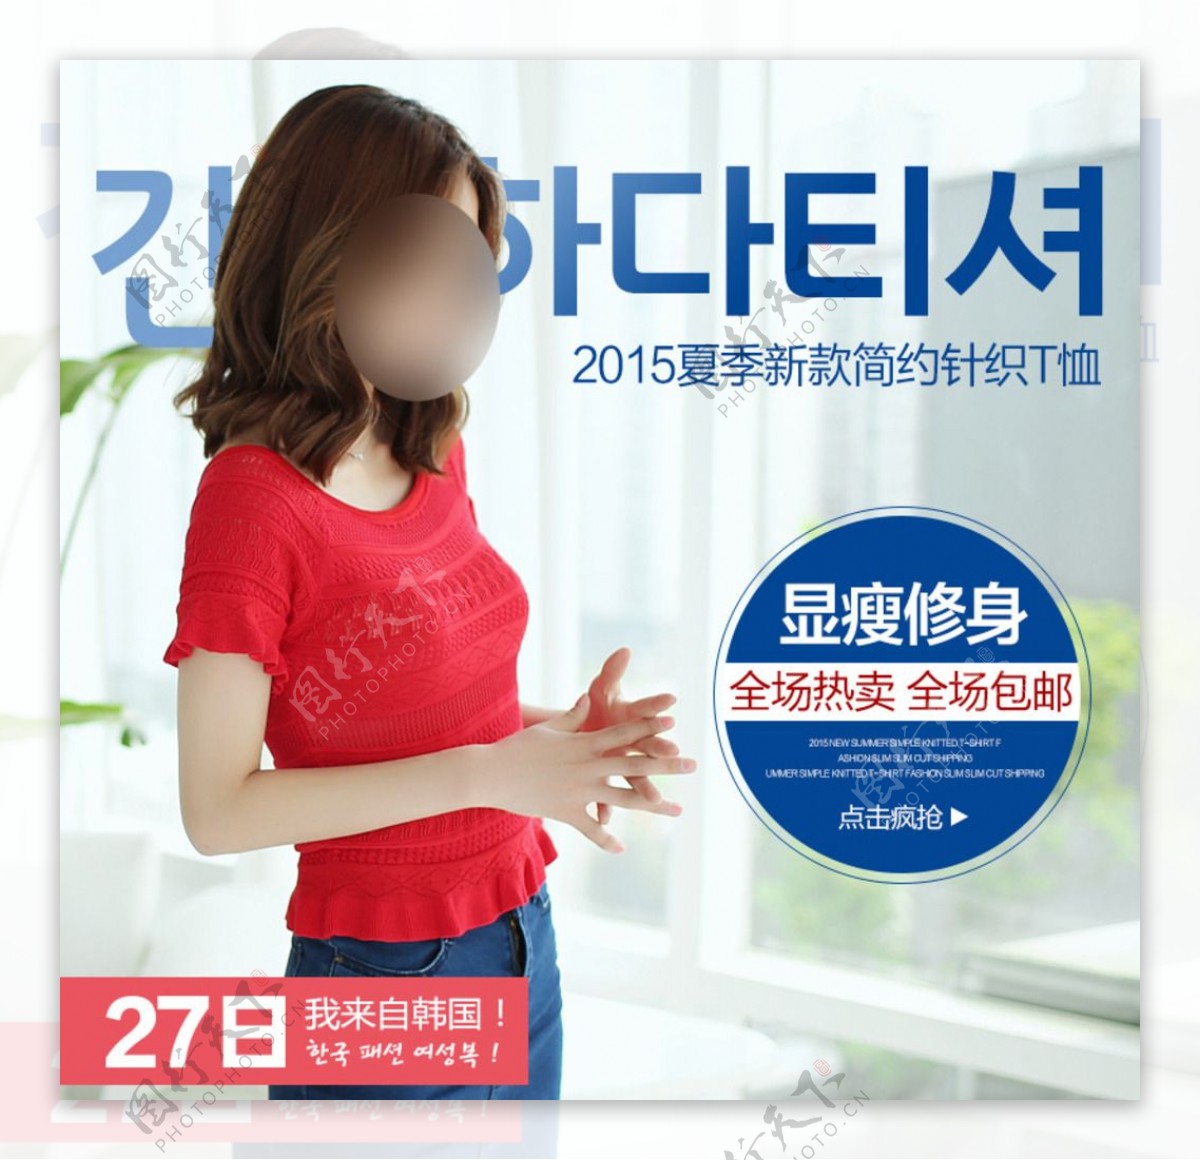 淘宝韩版女装直通车推广图模版图片